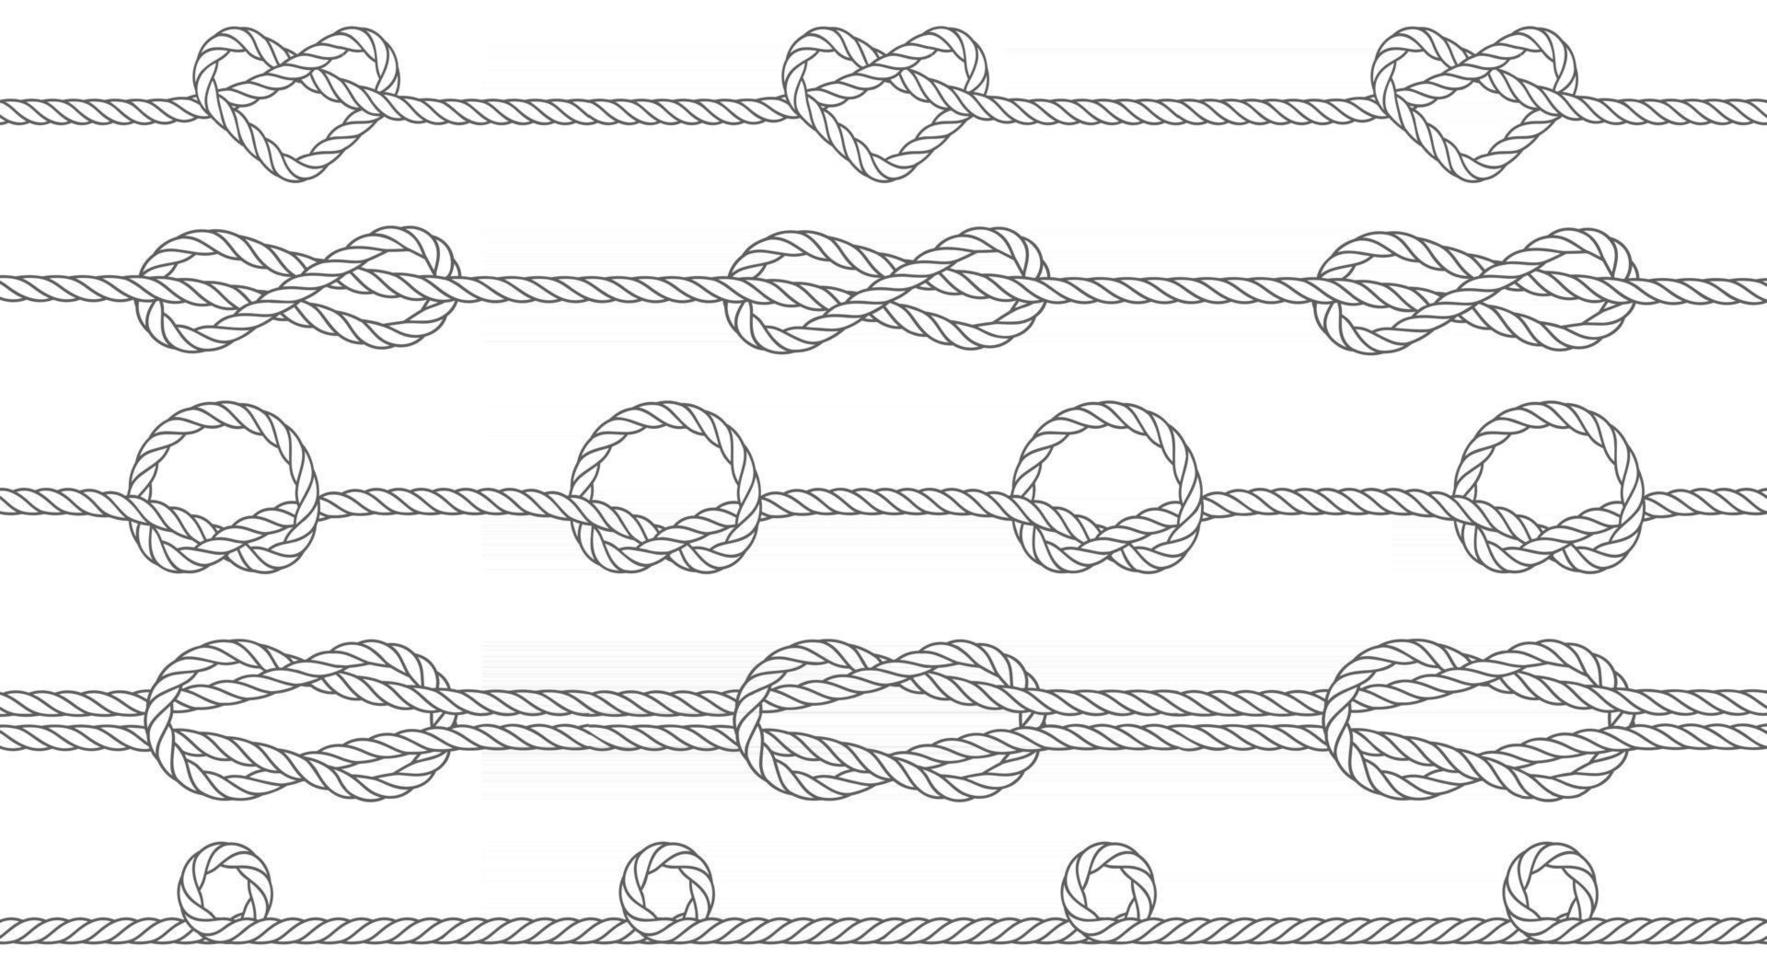 textura fluida de cuerdas con nudos. nudos de un círculo, infinito y forma de corazón. patrón repetible. ilustración vectorial. vector